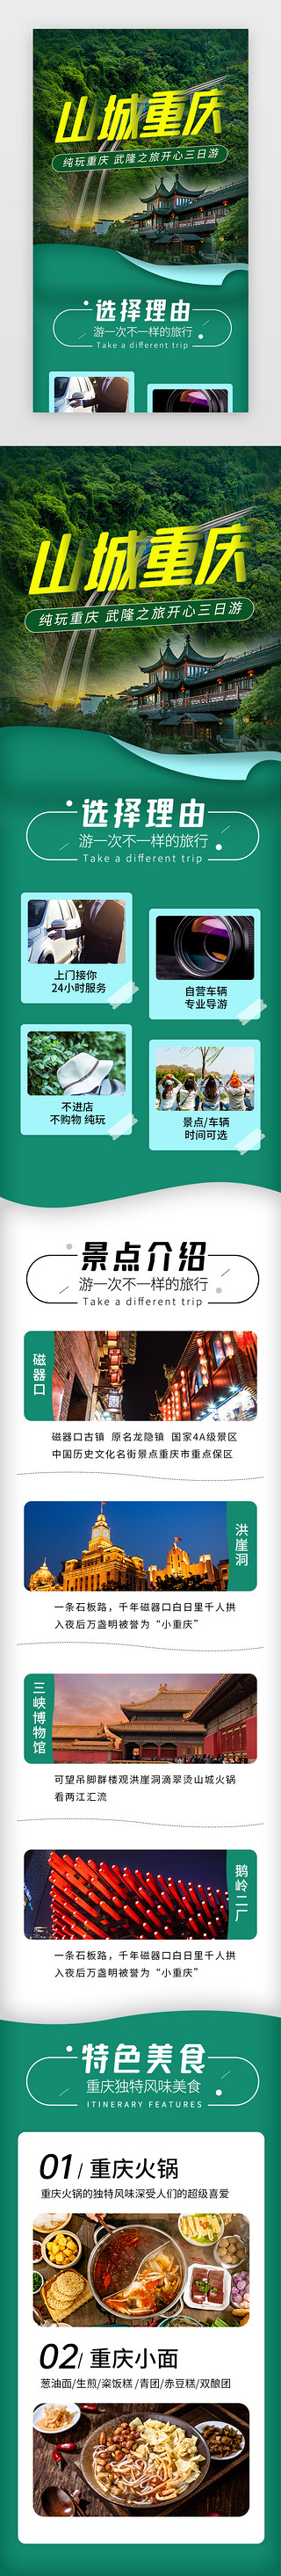 春游UI设计素材_山城重庆旅游景点介绍H5长图